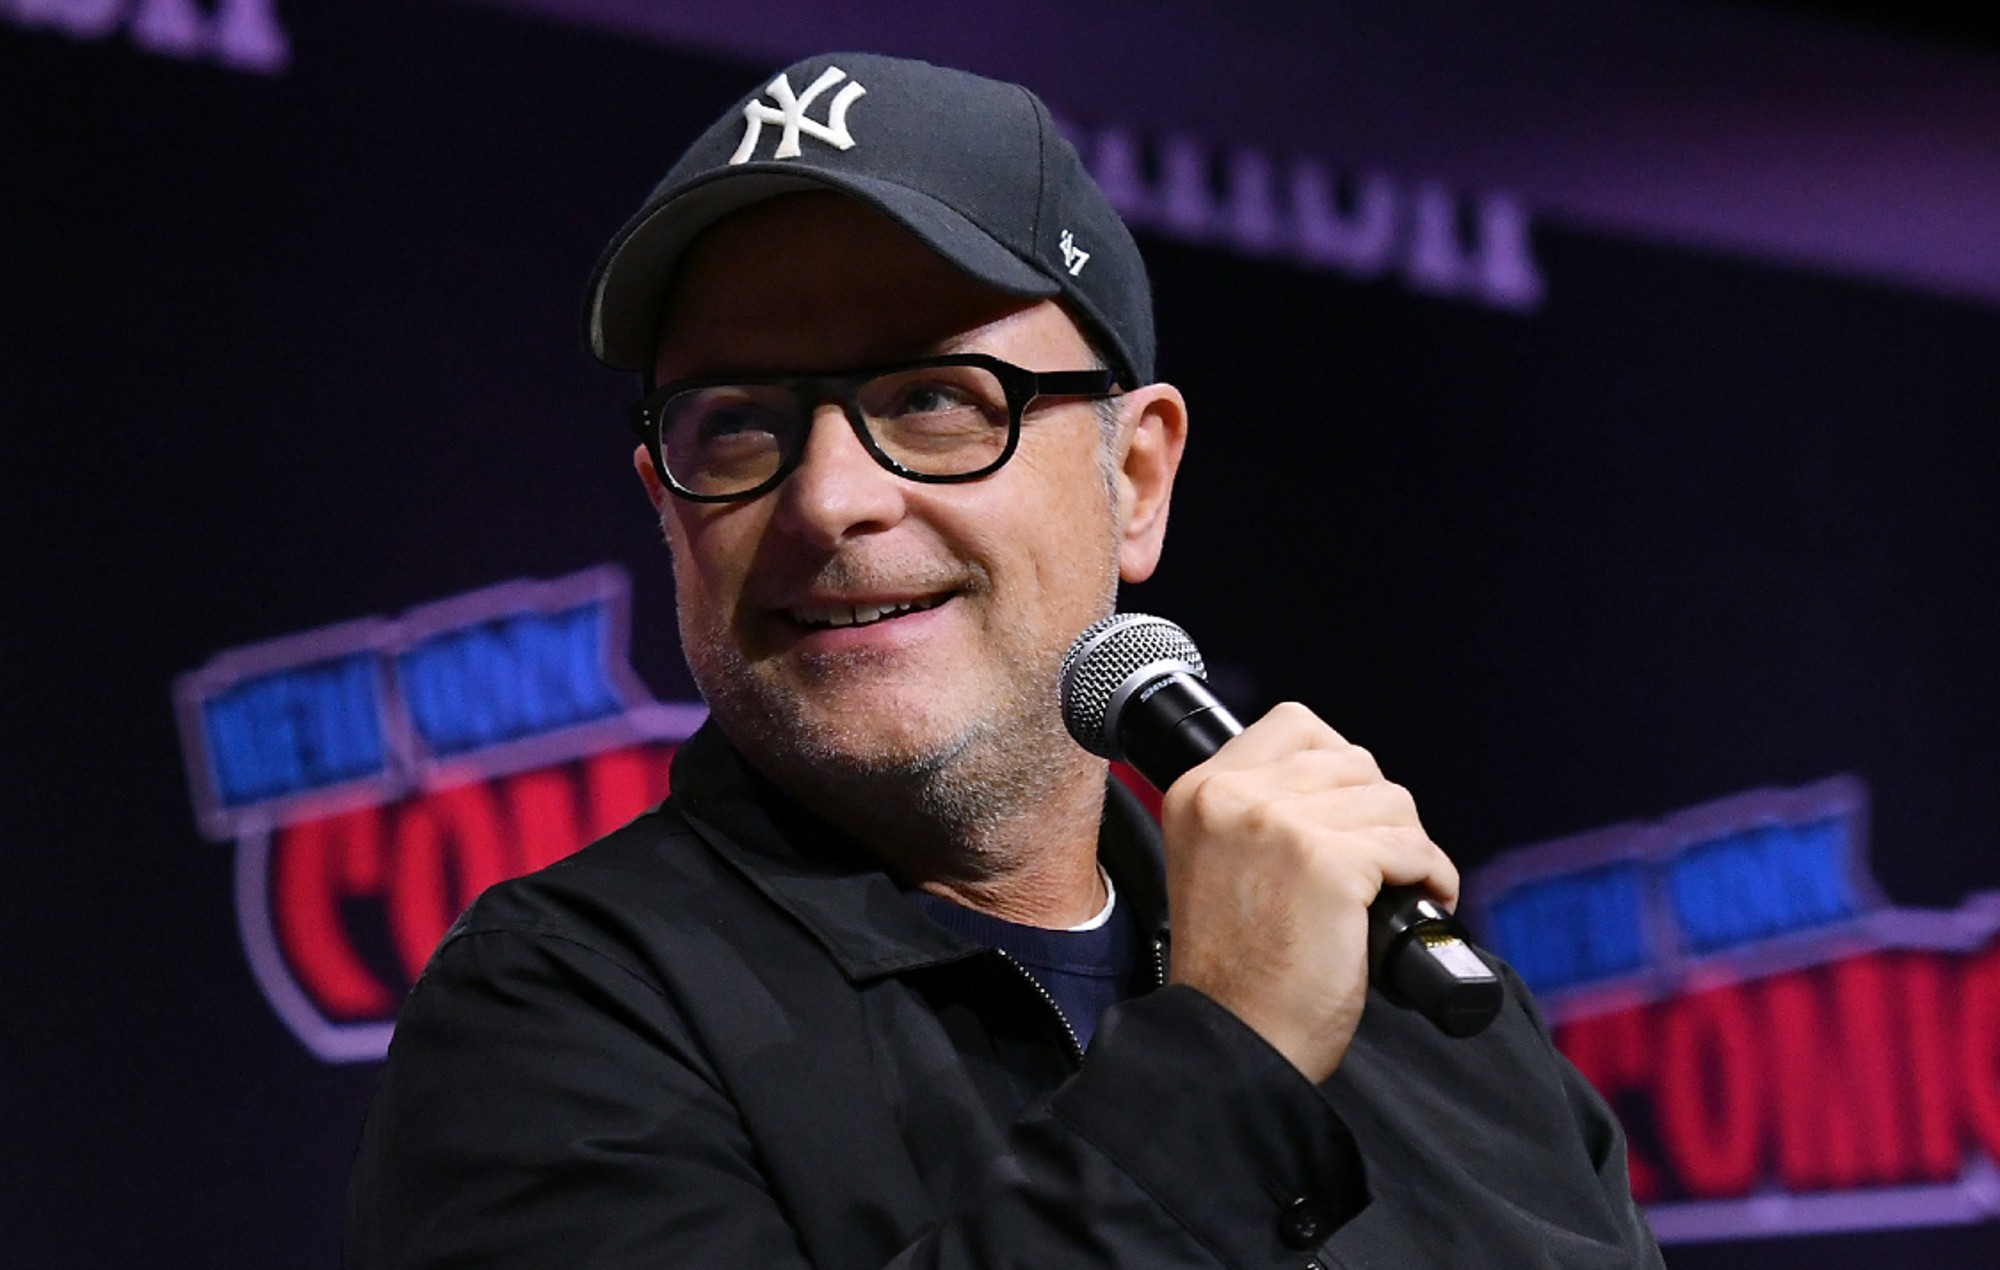 El director de X-Men, Matthew Vaughn, dice que necesitamos "tiempo libre" de las películas de superhéroes